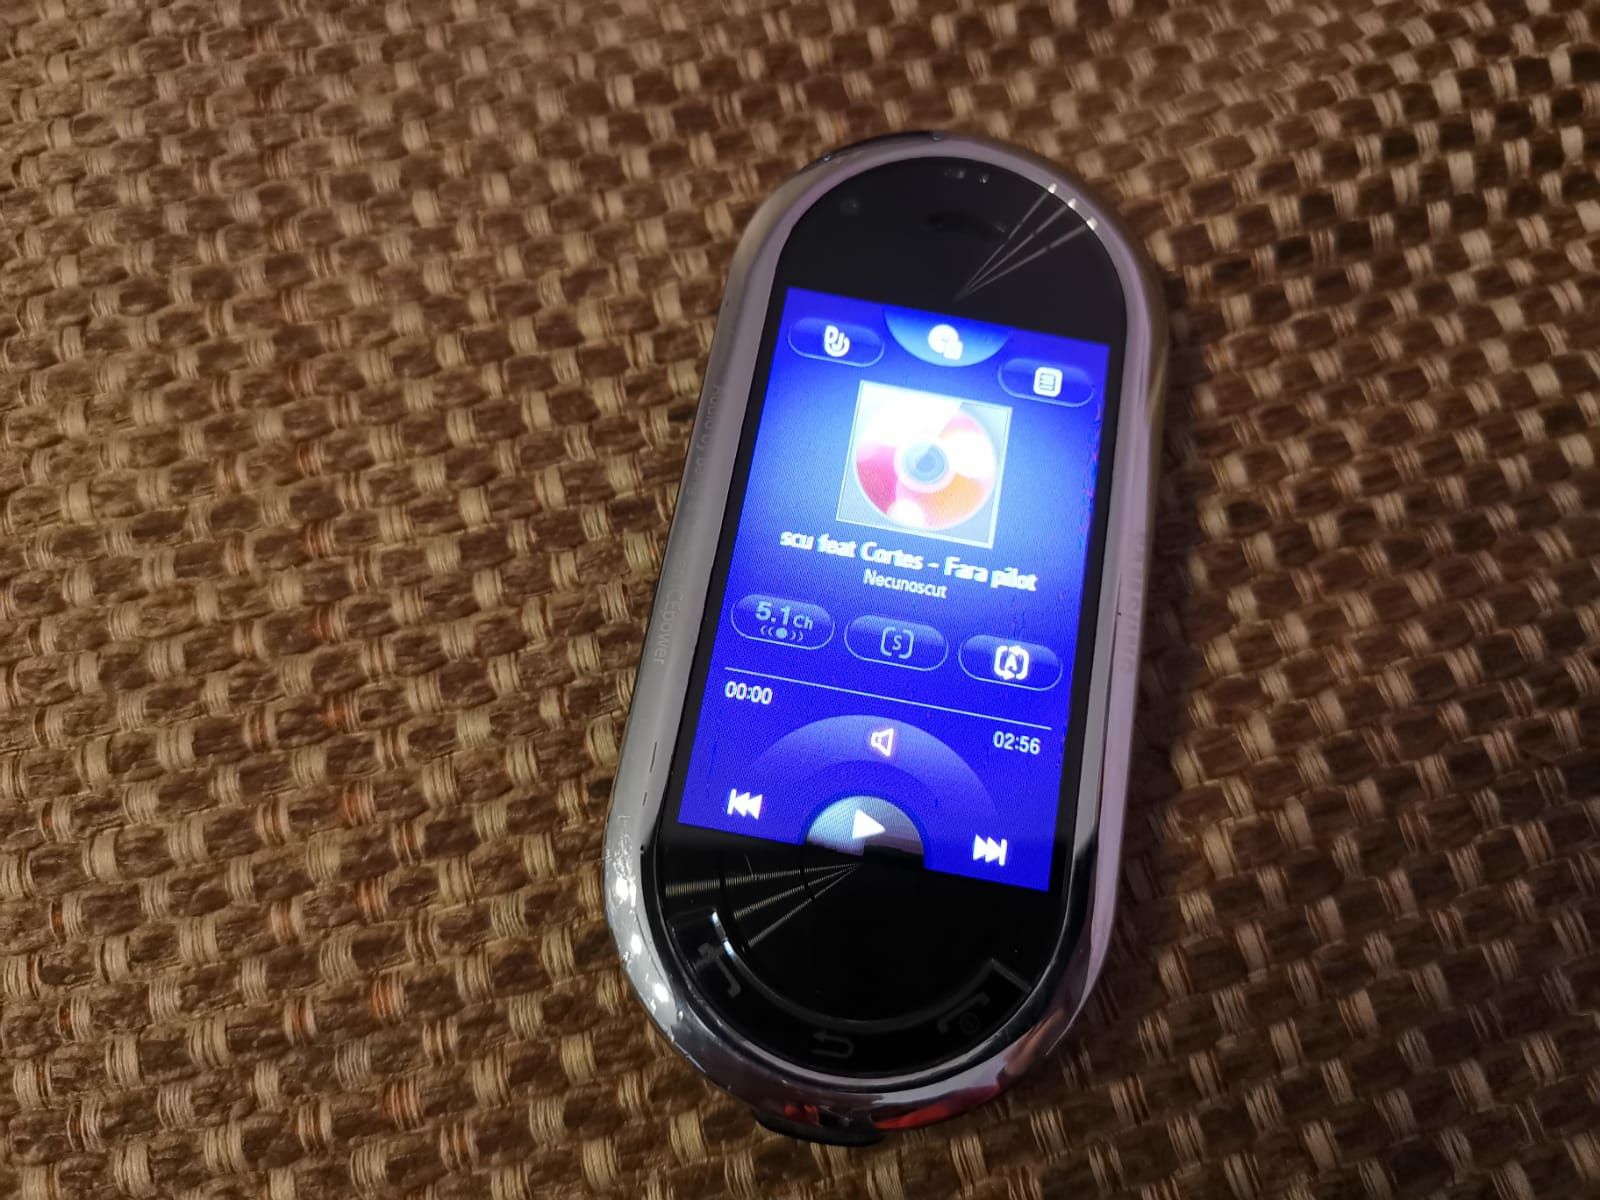 Samsung M7600 Beats beng&olufsen